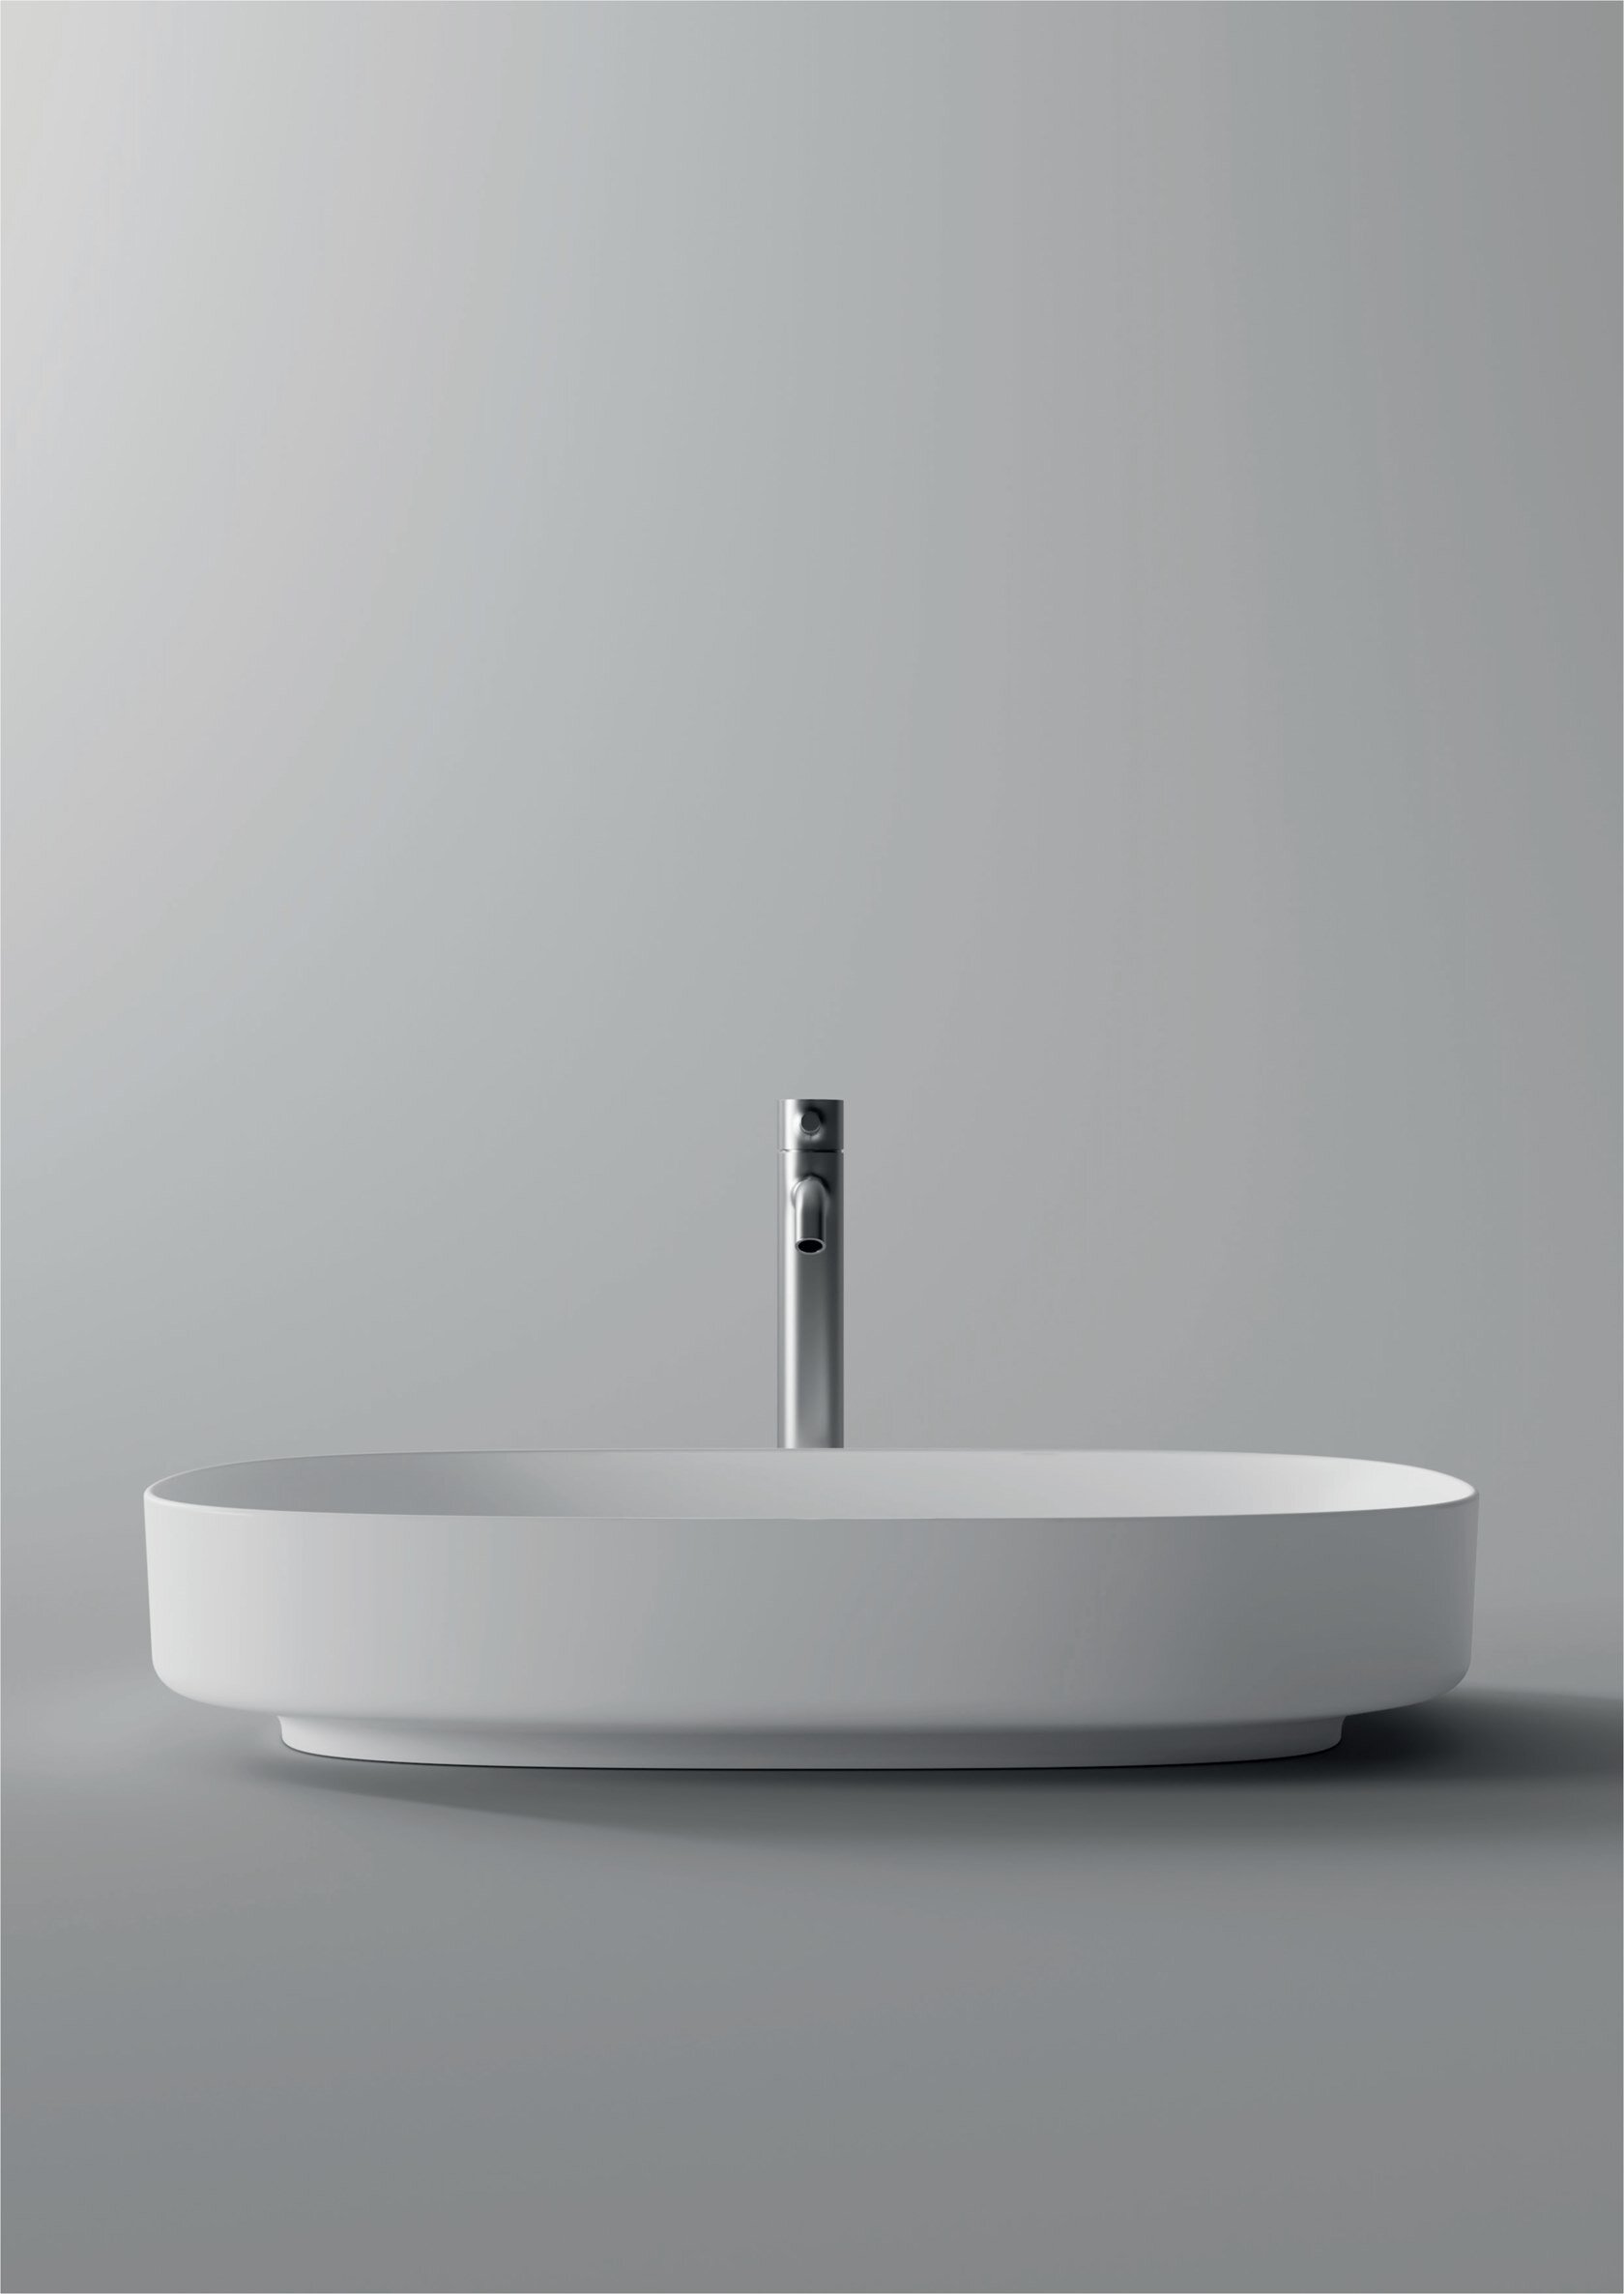 2b_FORM-Oval-washbasin-Alice-Ceramica-364860-rel40fd5c8d.png